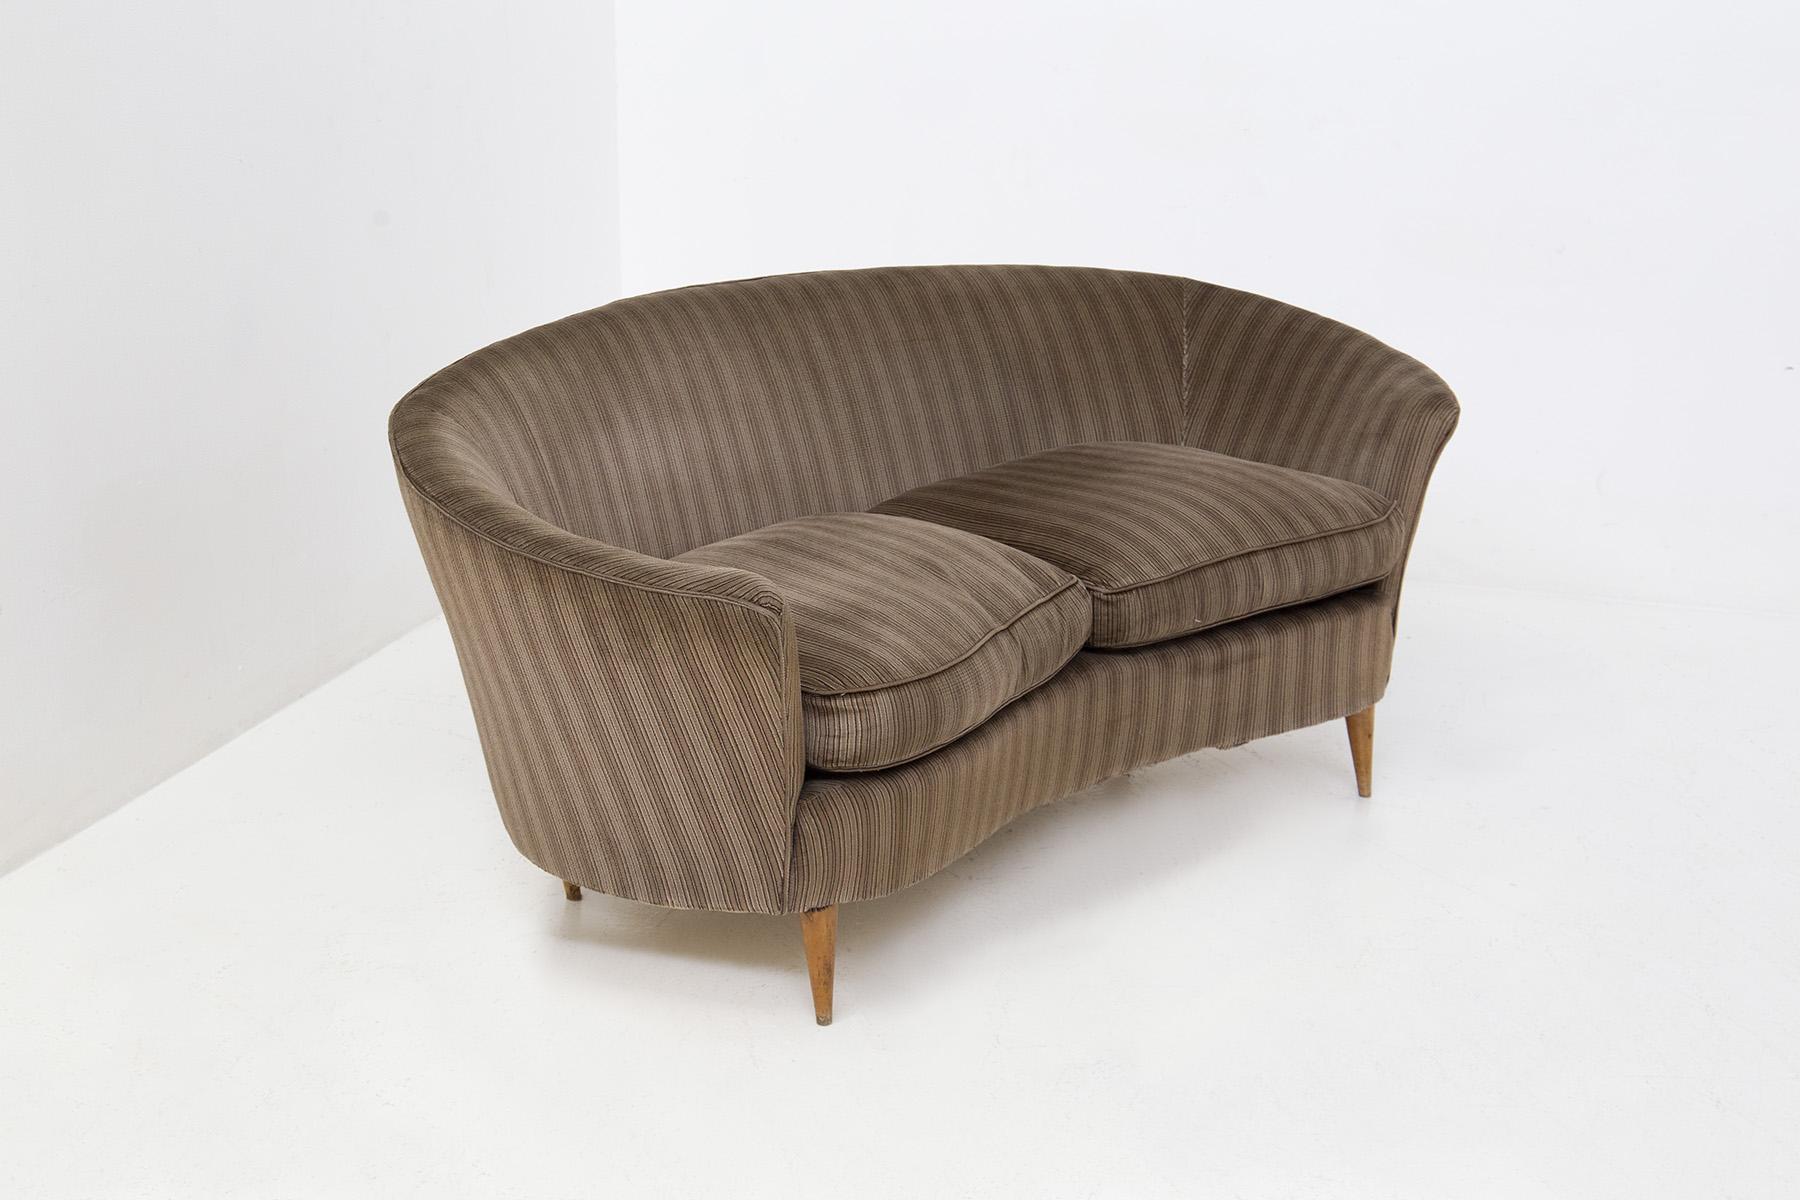 Elegantes kleines italienisches Wohnzimmersofa von Ico Parisi aus den 1950er Jahren. Das Sofa befindet sich im Originalzustand, wir finden auch den Originalstoff der Zeit in grau-braun gestreiftem Samt. Das Sofa kann als Loveseat eingestuft werden,